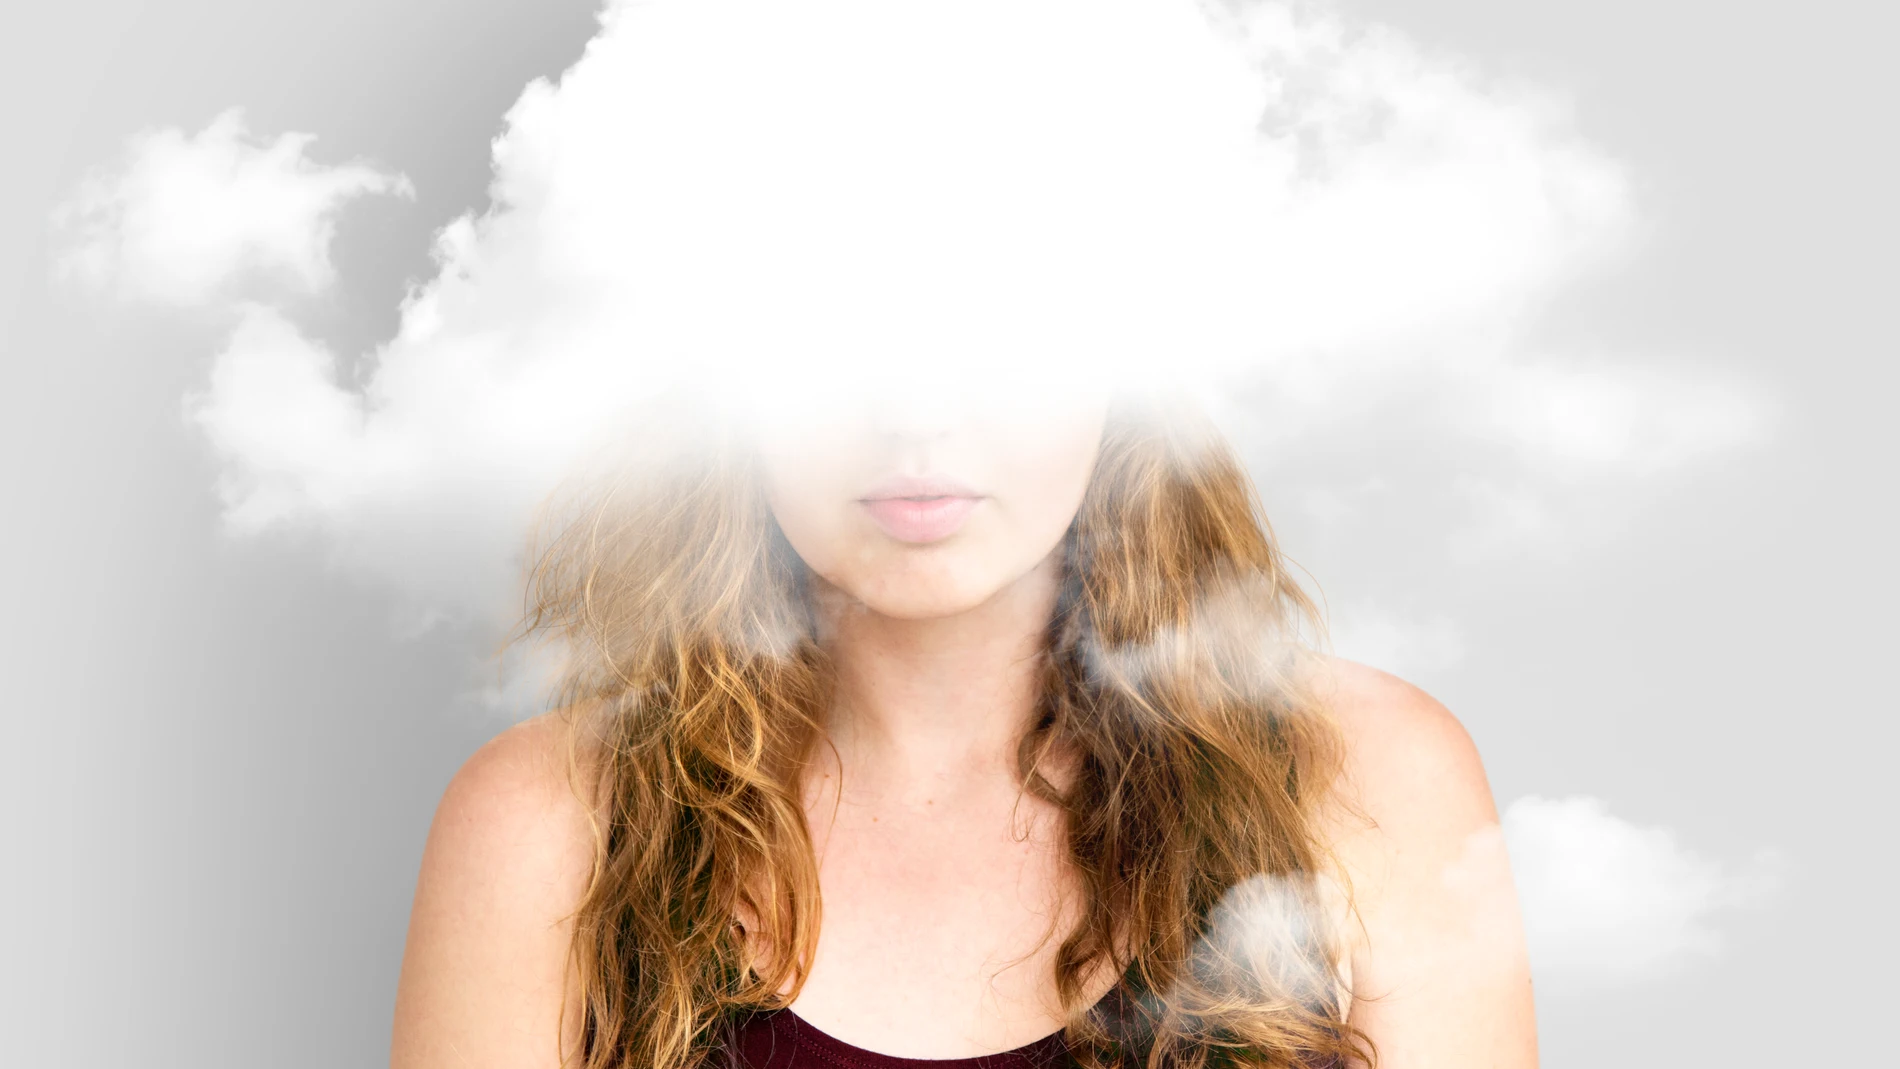 Una chica envuelta en una nube de pensamientos